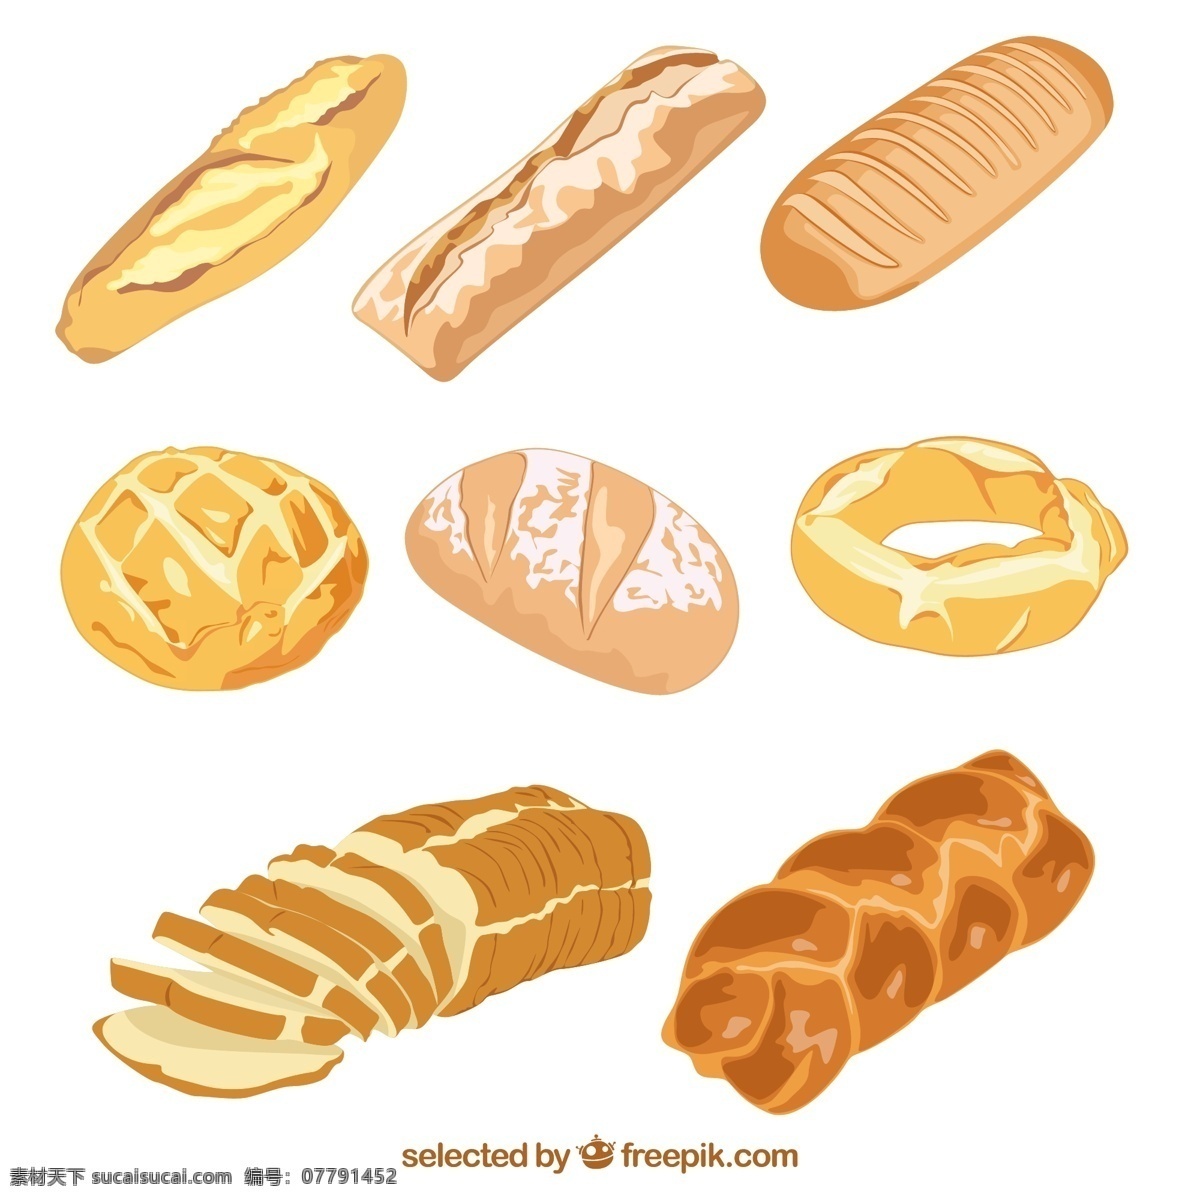 美味面包矢量 菠萝包 吐司 面包 烘培 食物 切片面包 矢量图 ai格式 图标 标签 生活百科 餐饮美食